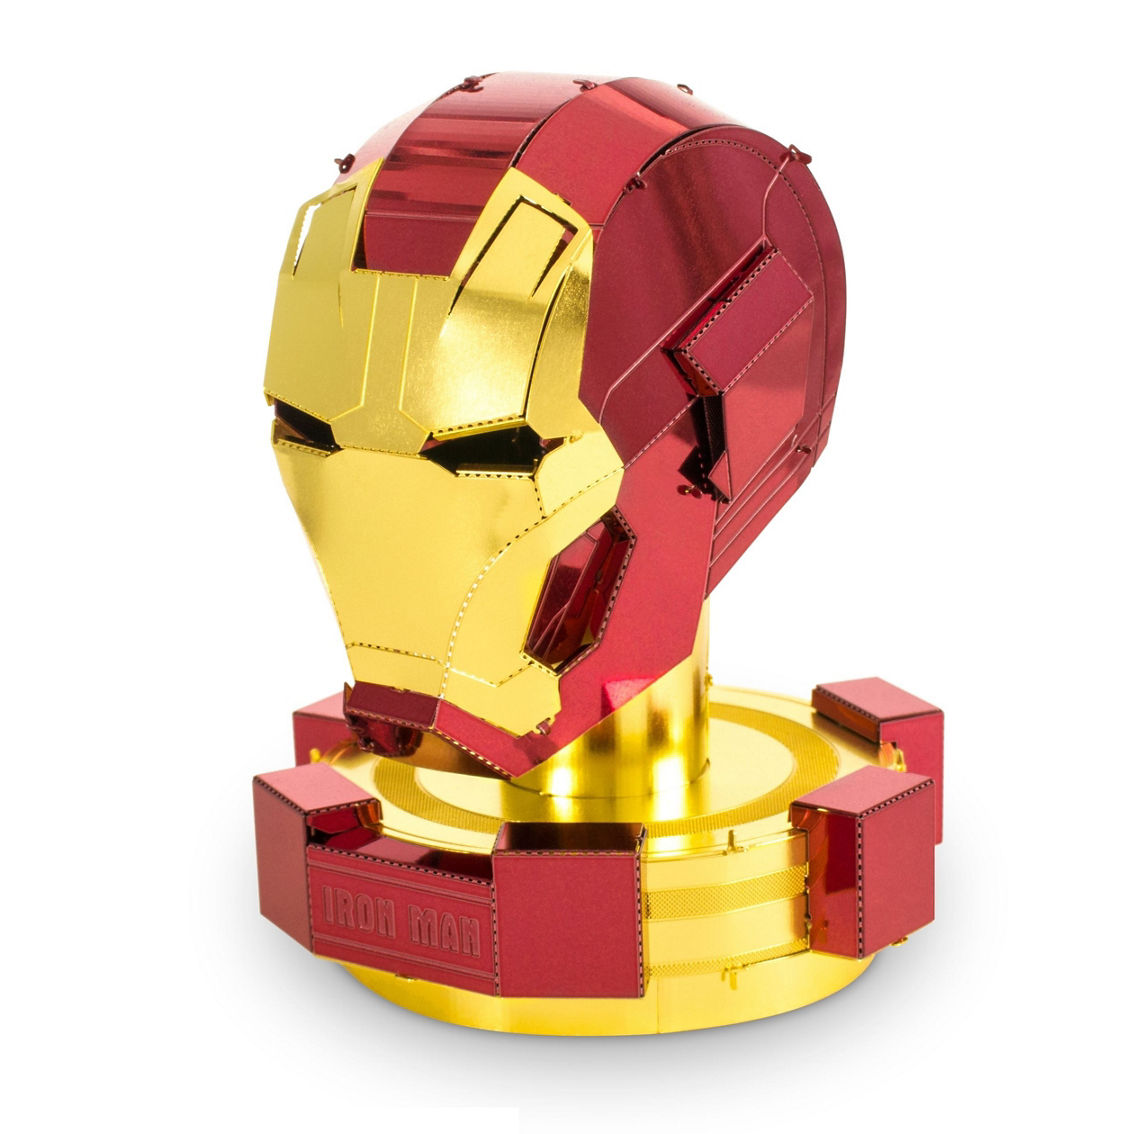 Fascinations Metal Earth 3D Model Kit - Marvel Avengers Iron Man Mark 45 Helmet - Image 2 of 2